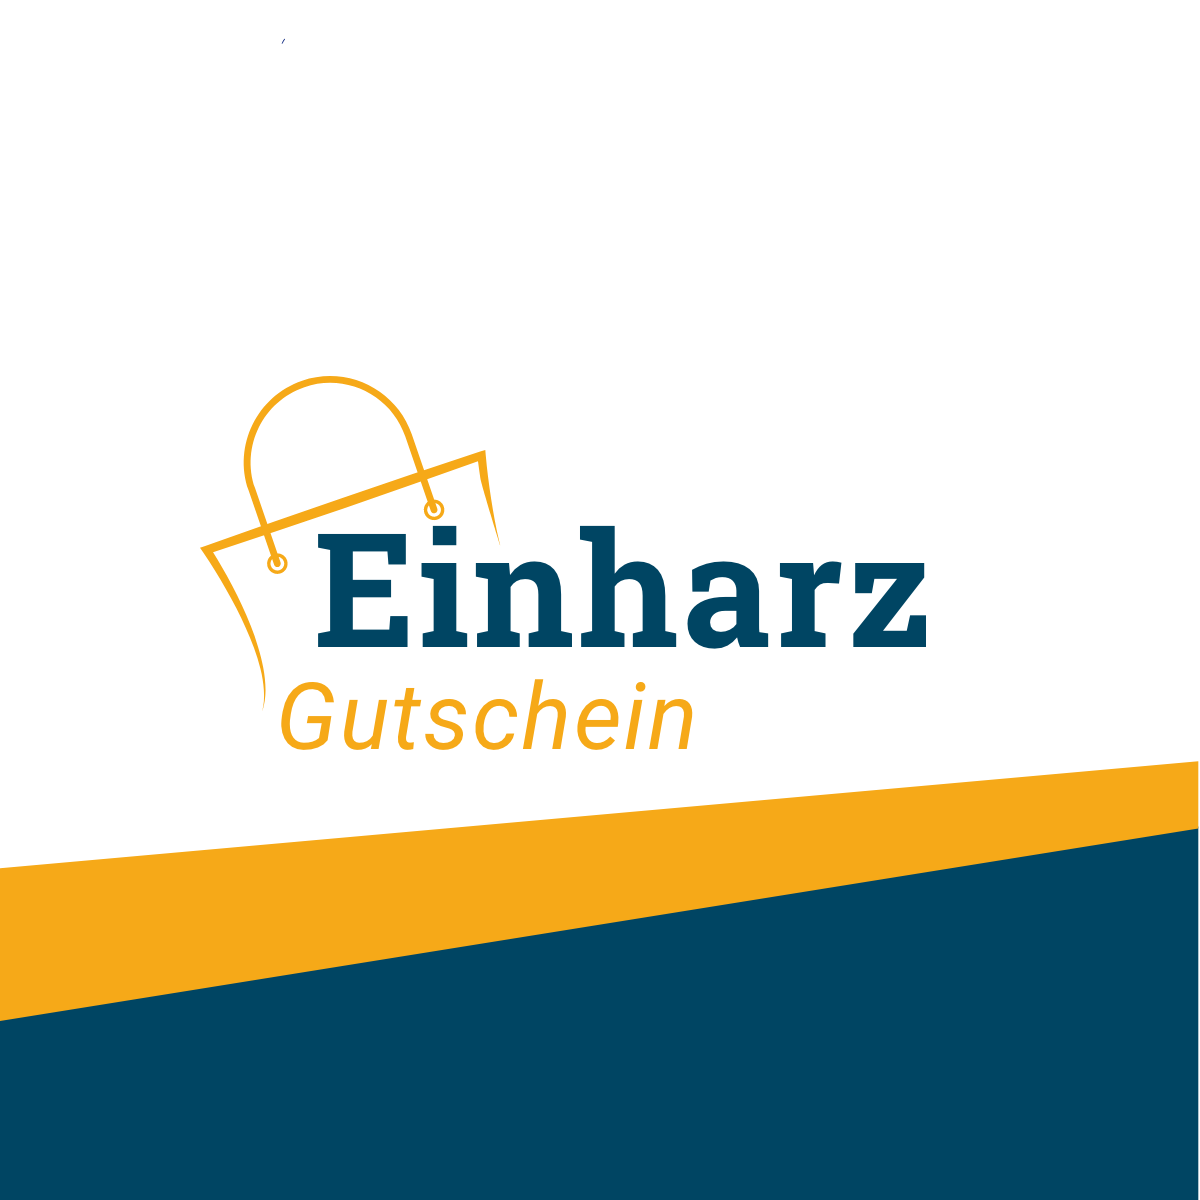 (c) Einharz-gutschein.de